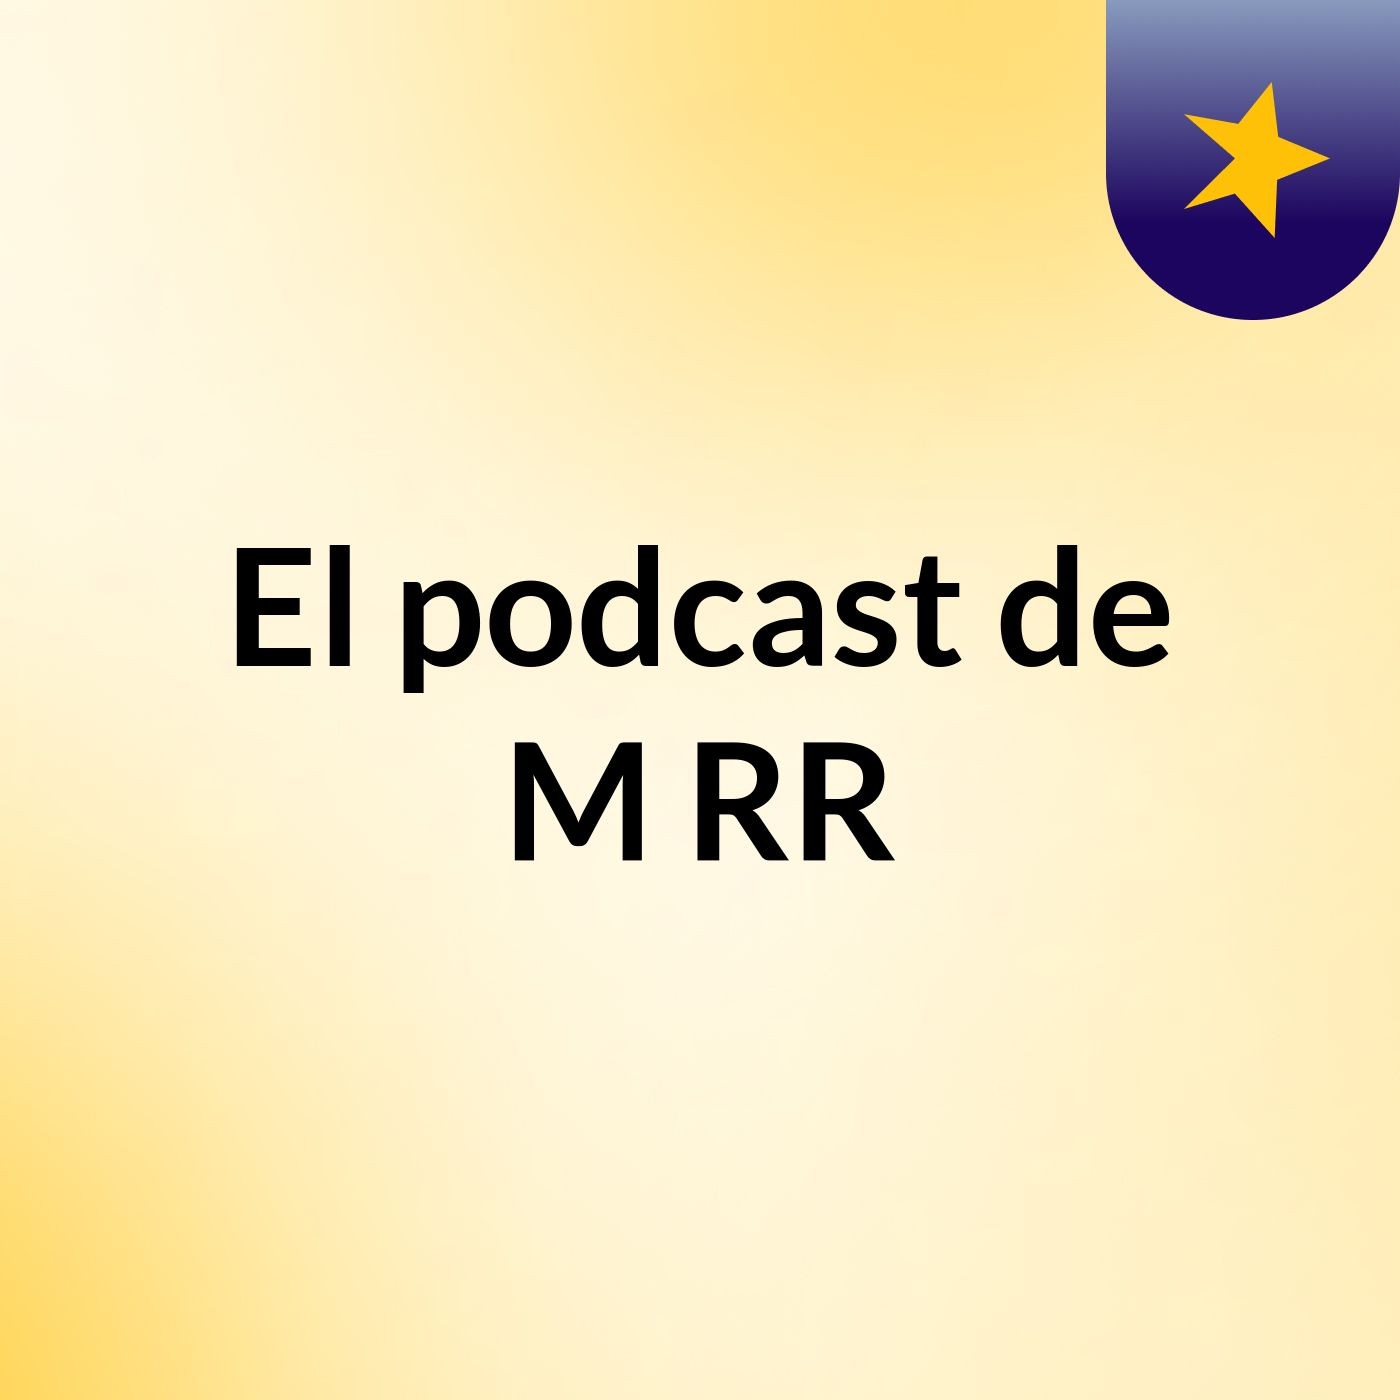 El podcast de M RR